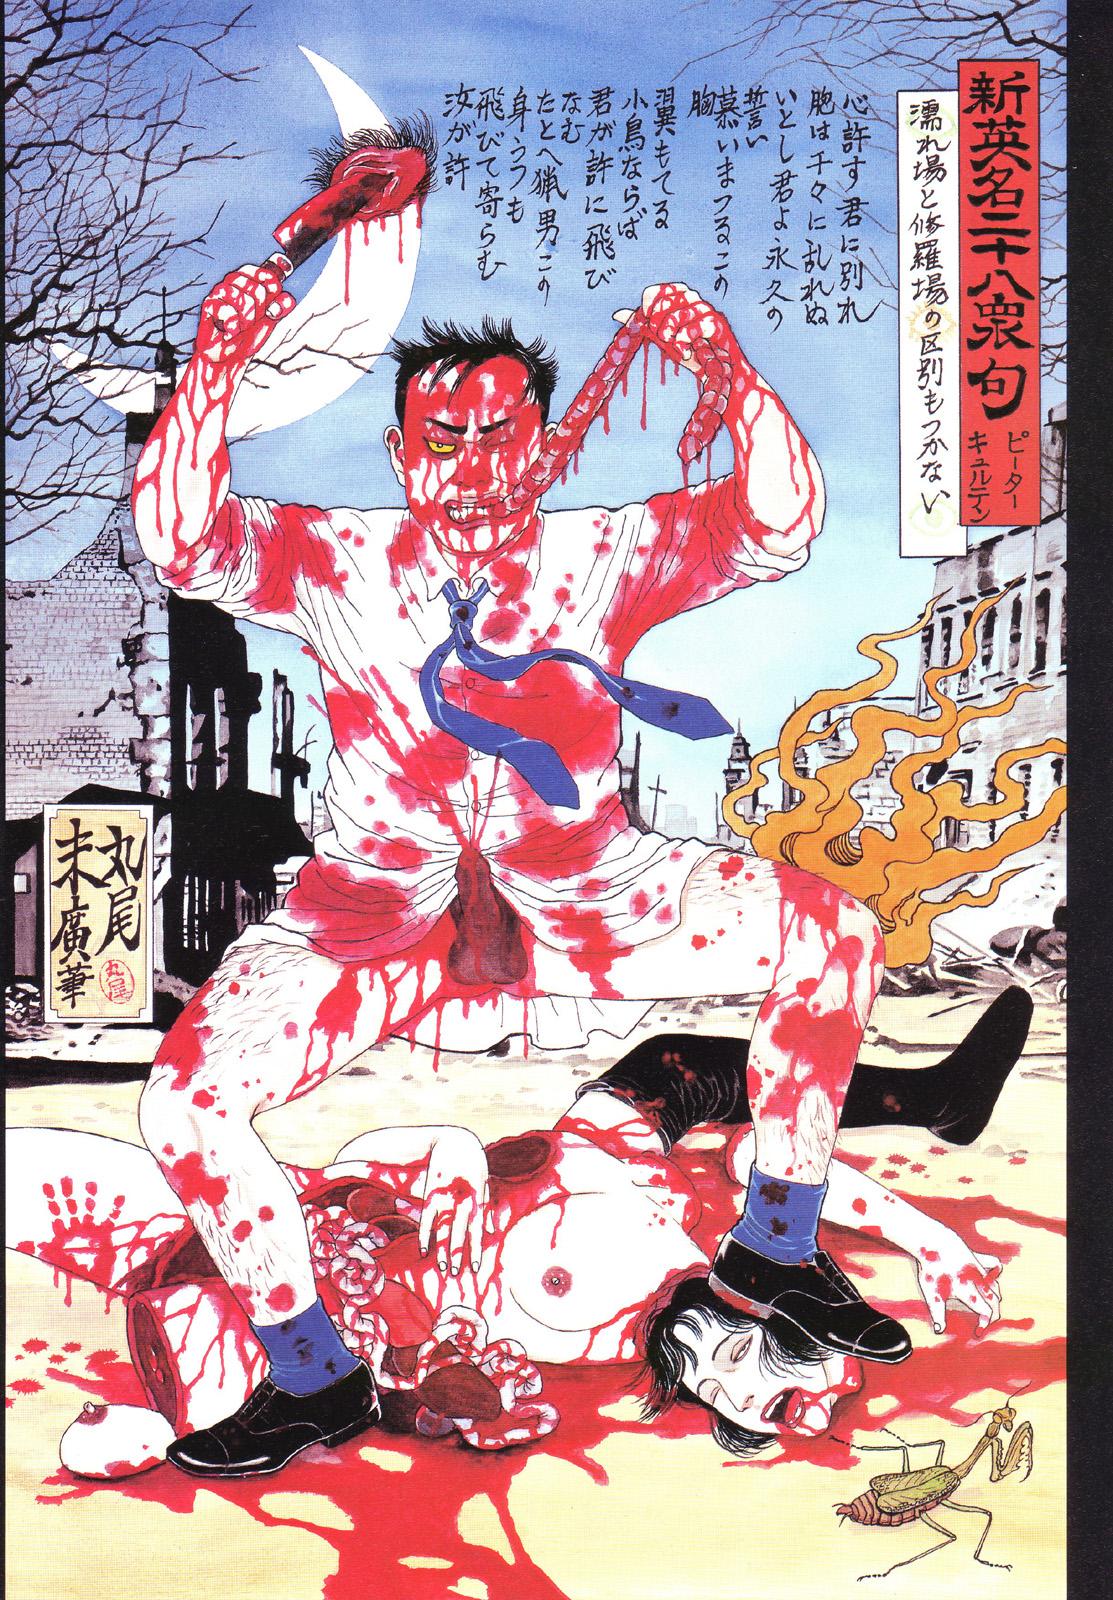 江戸昭和競作 - Bloody Ukiyo-e in 1866 & 1988 46